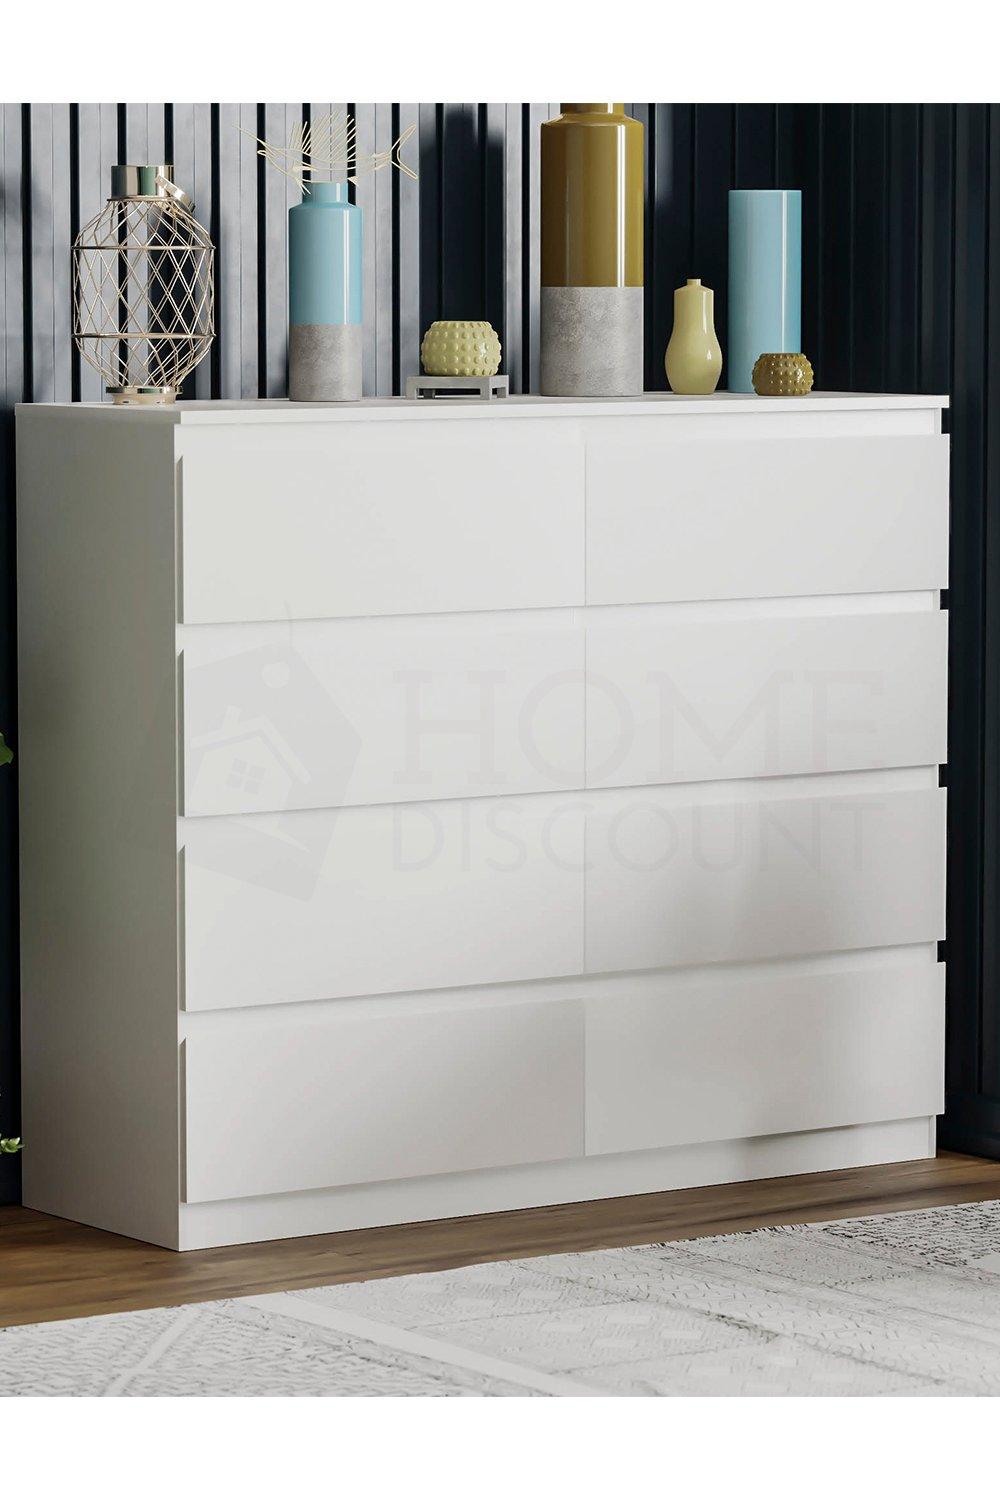 Home Discount Vida Designs Denver 8 Drawer Chest of Drawers Storage Bedroom Furniture